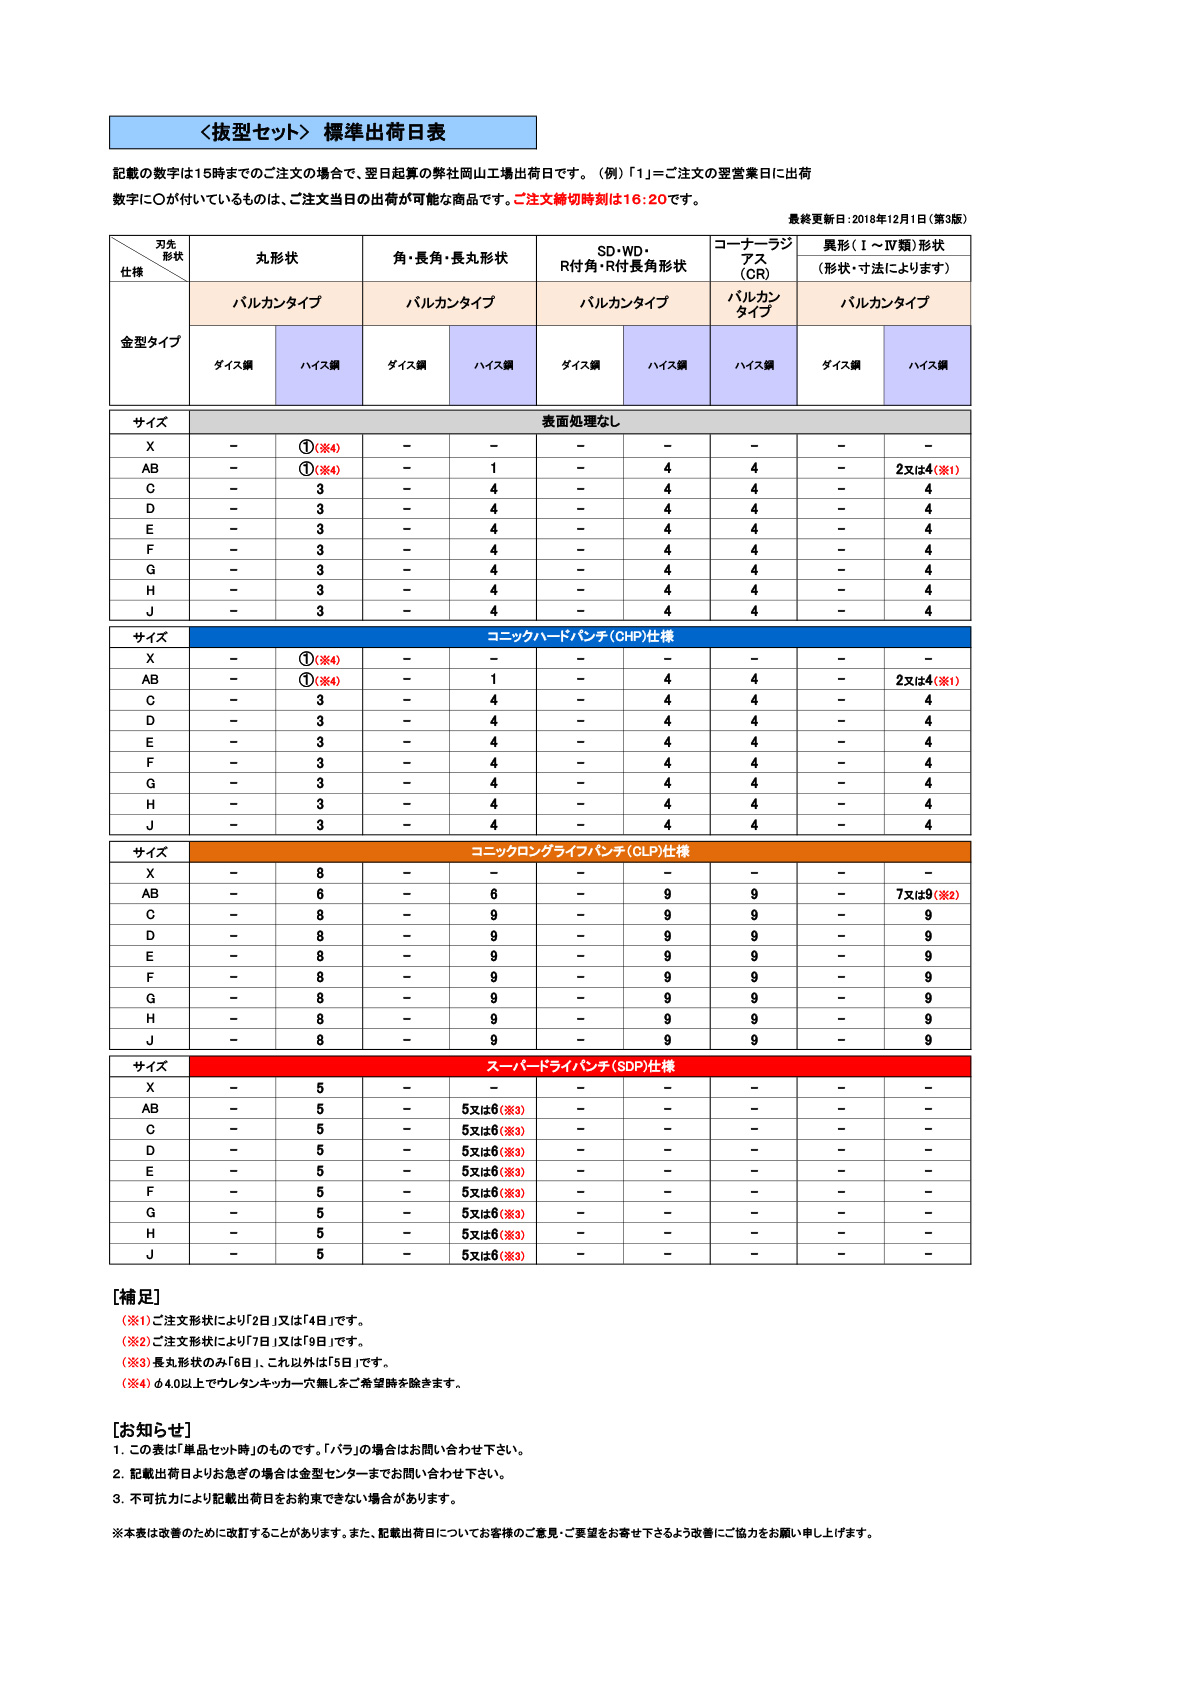 標準出荷日表(バルカン・抜型)